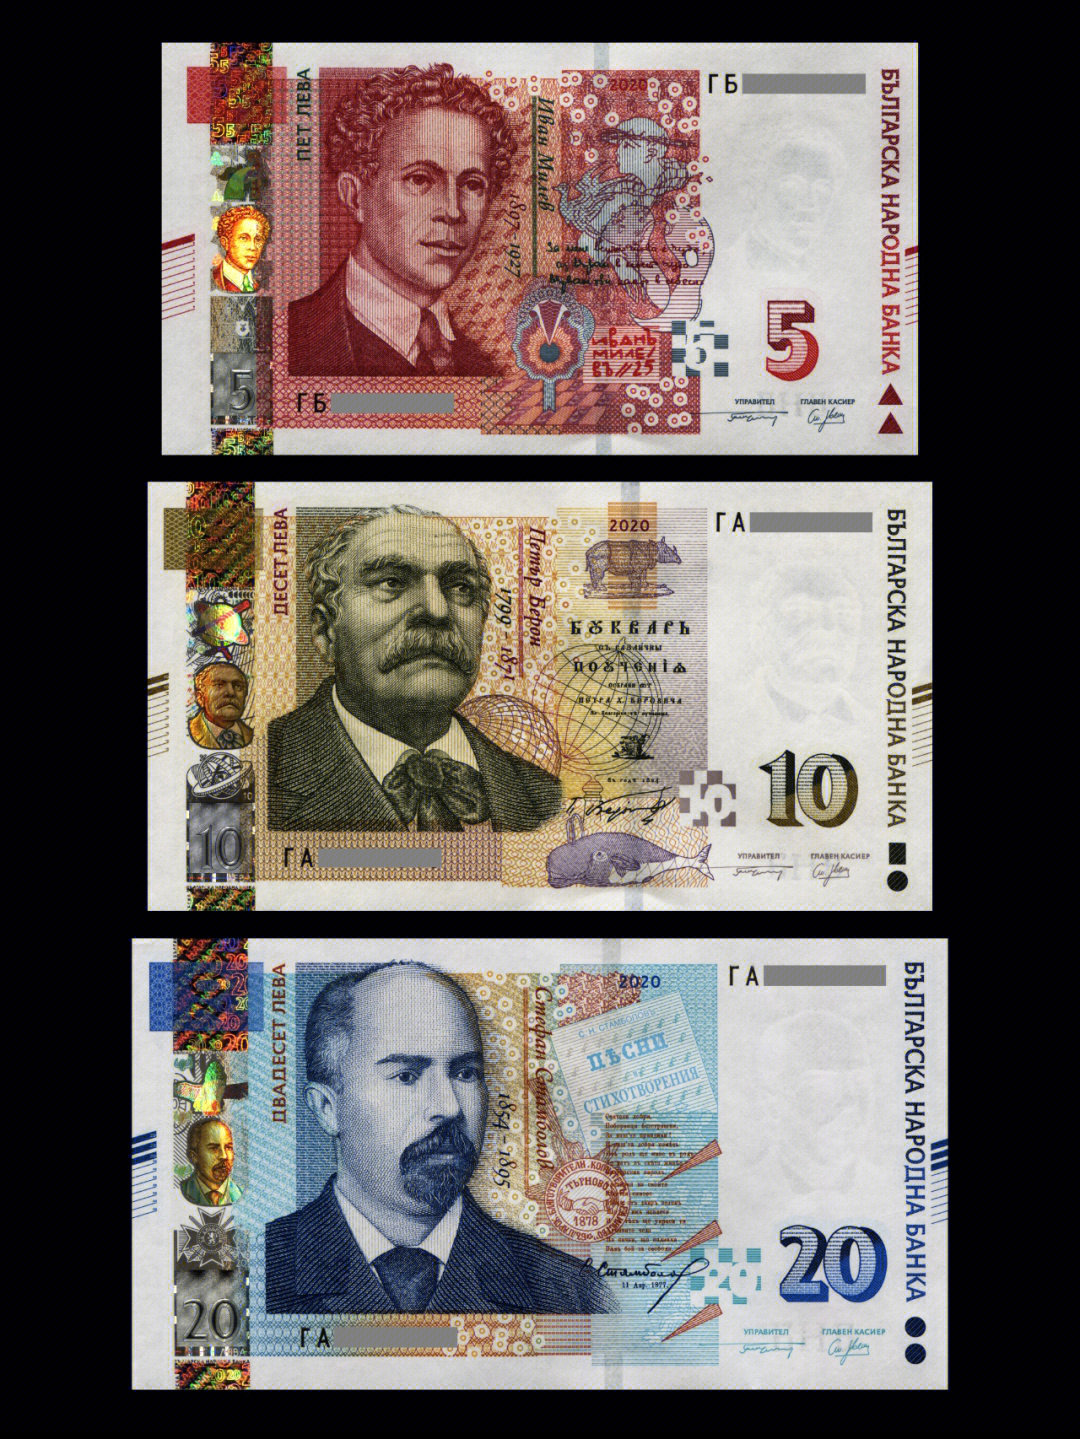 保加利亚的货币为列弗,列弗一词源于古保加利亚语,意为狮子,而狮子则